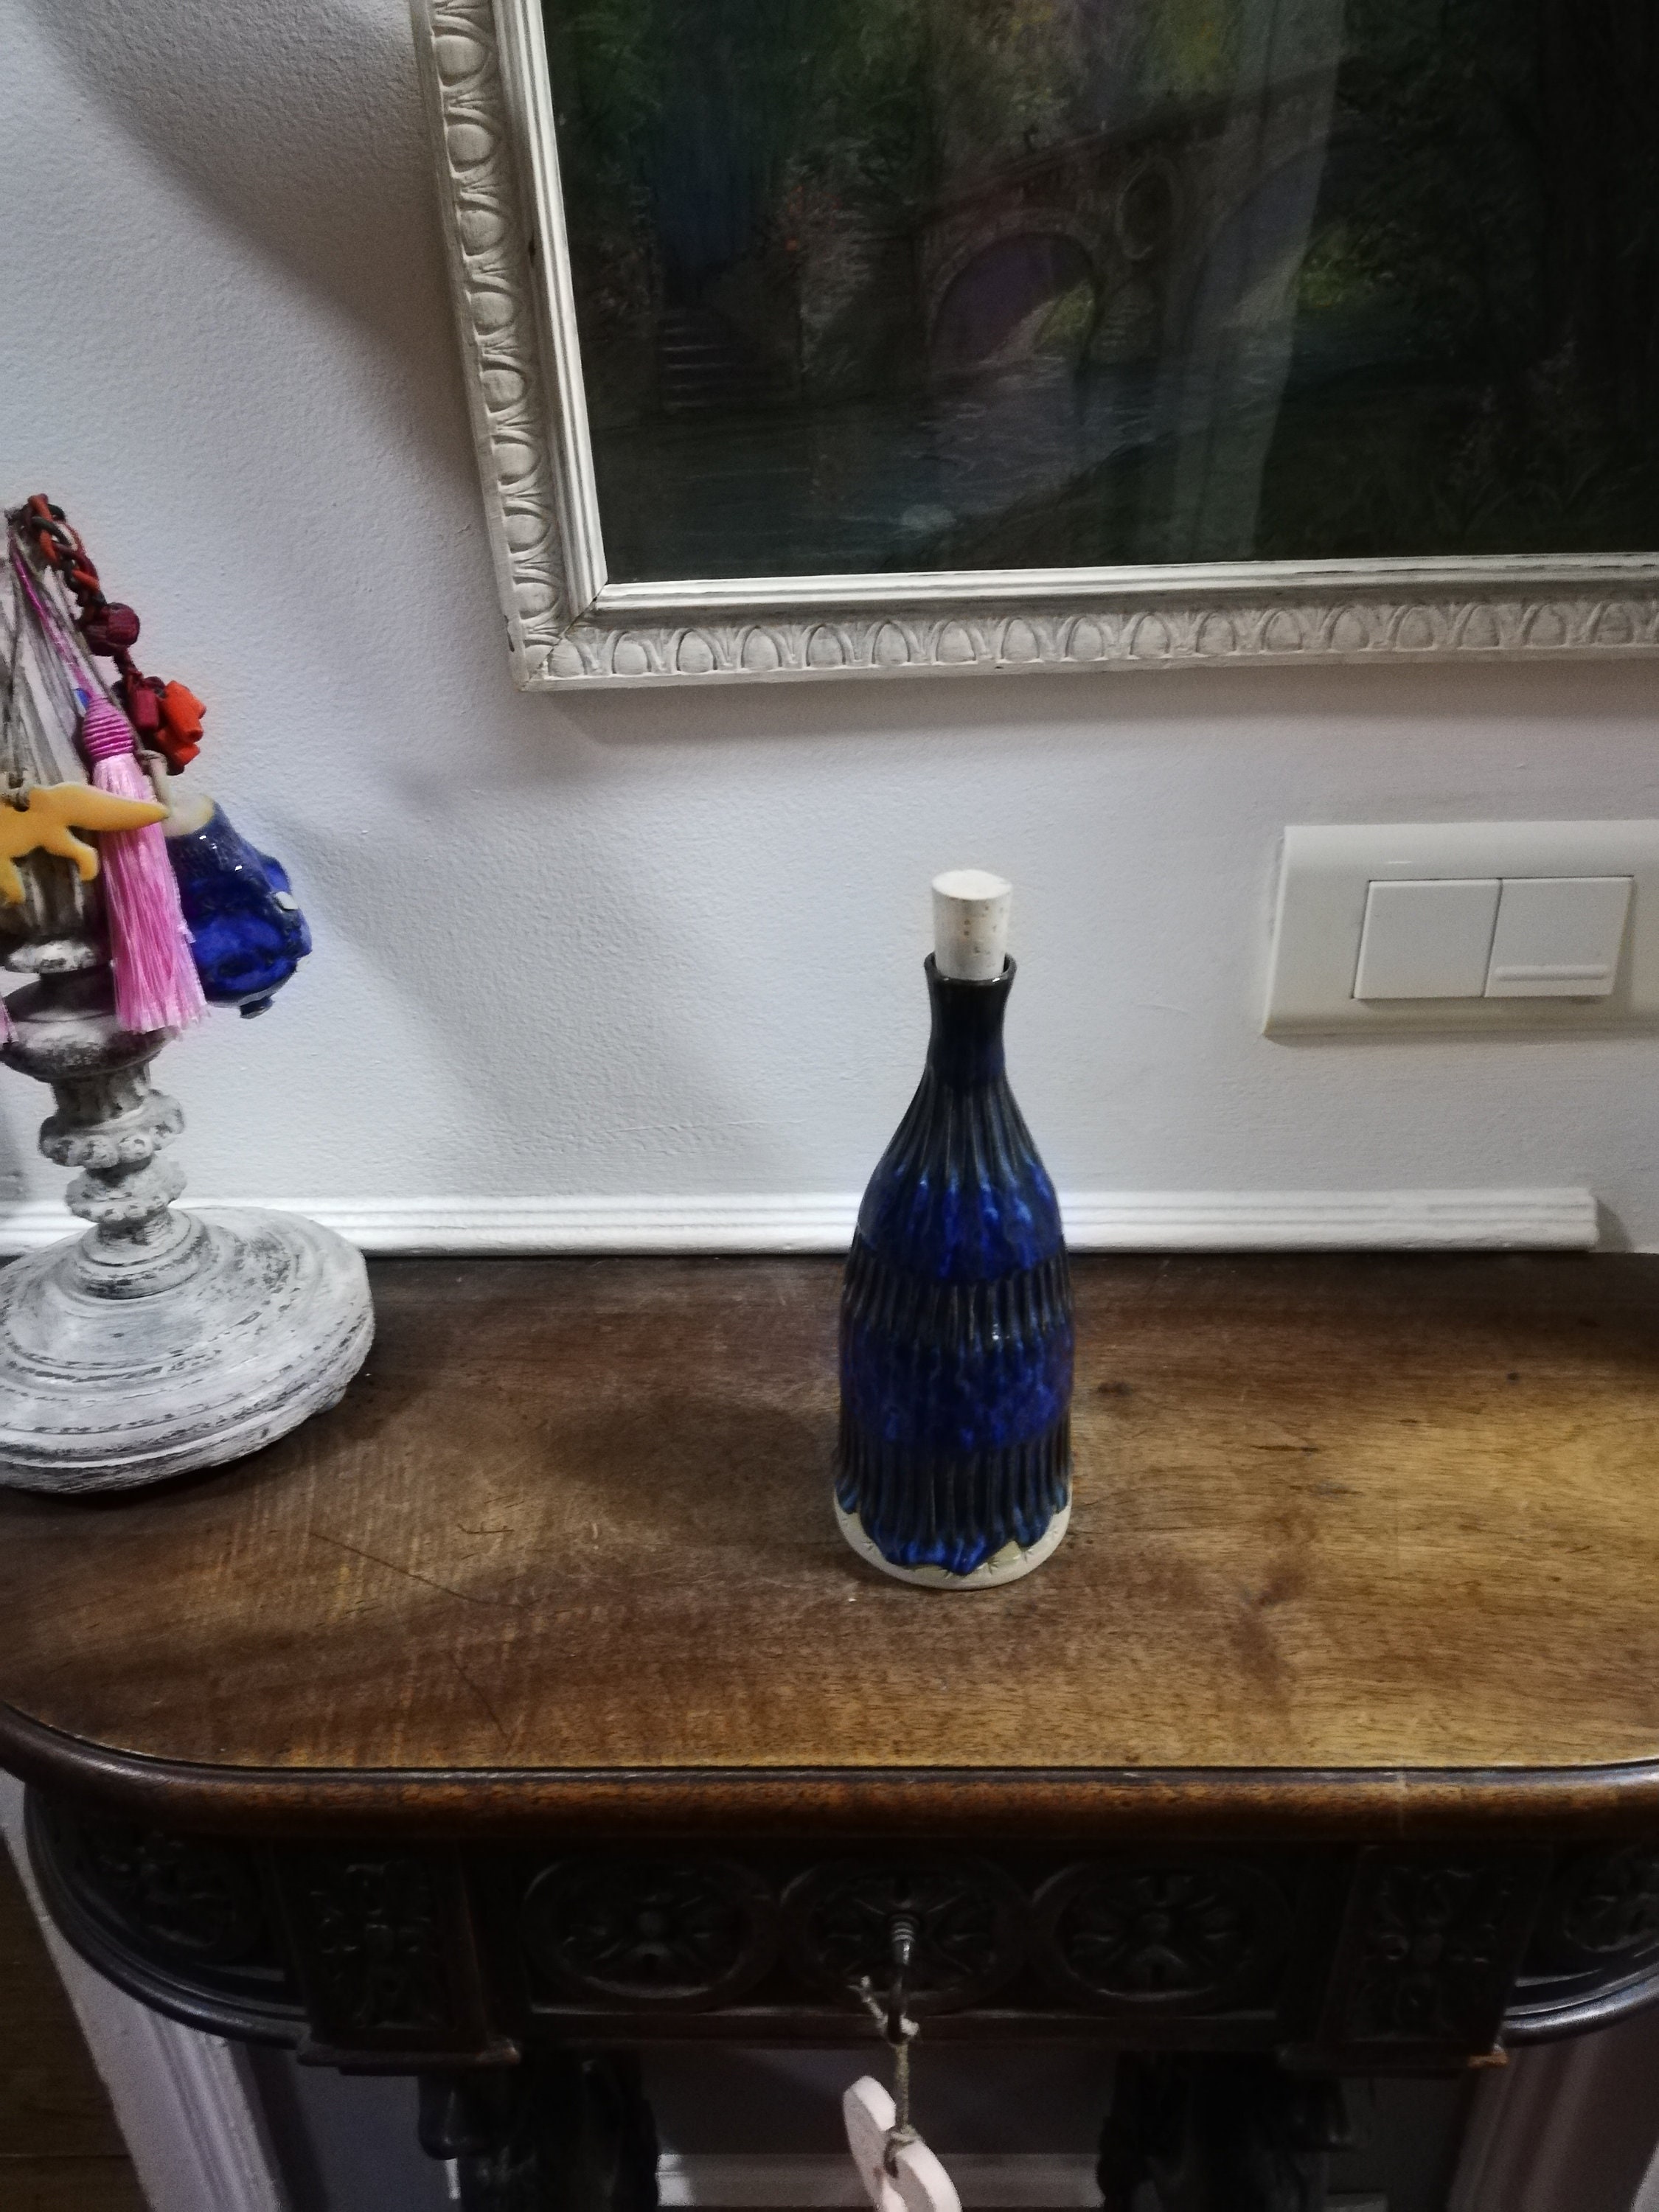 DISTRIBUTEUR D'HUILE D'OLIVE bouteille de vinaigre en céramique avec bec  verseur EUR 23,99 - PicClick FR